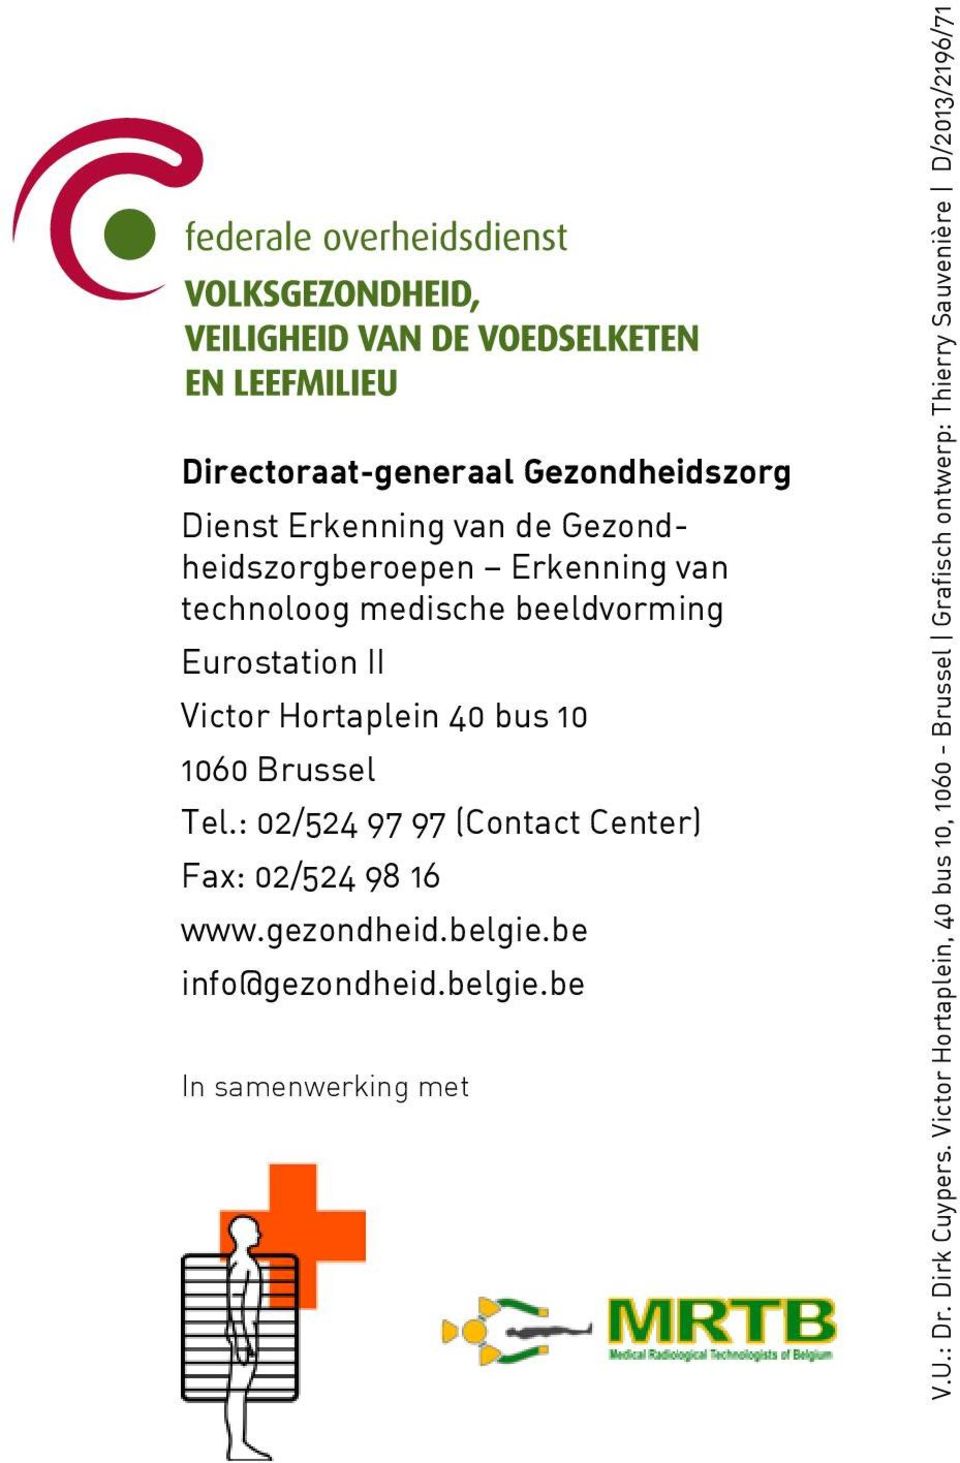 : 02/524 97 97 (Contact Center) Fax: 02/524 98 16 www.gezondheid.belgie.be info@gezondheid.belgie.be In samenwerking met V.